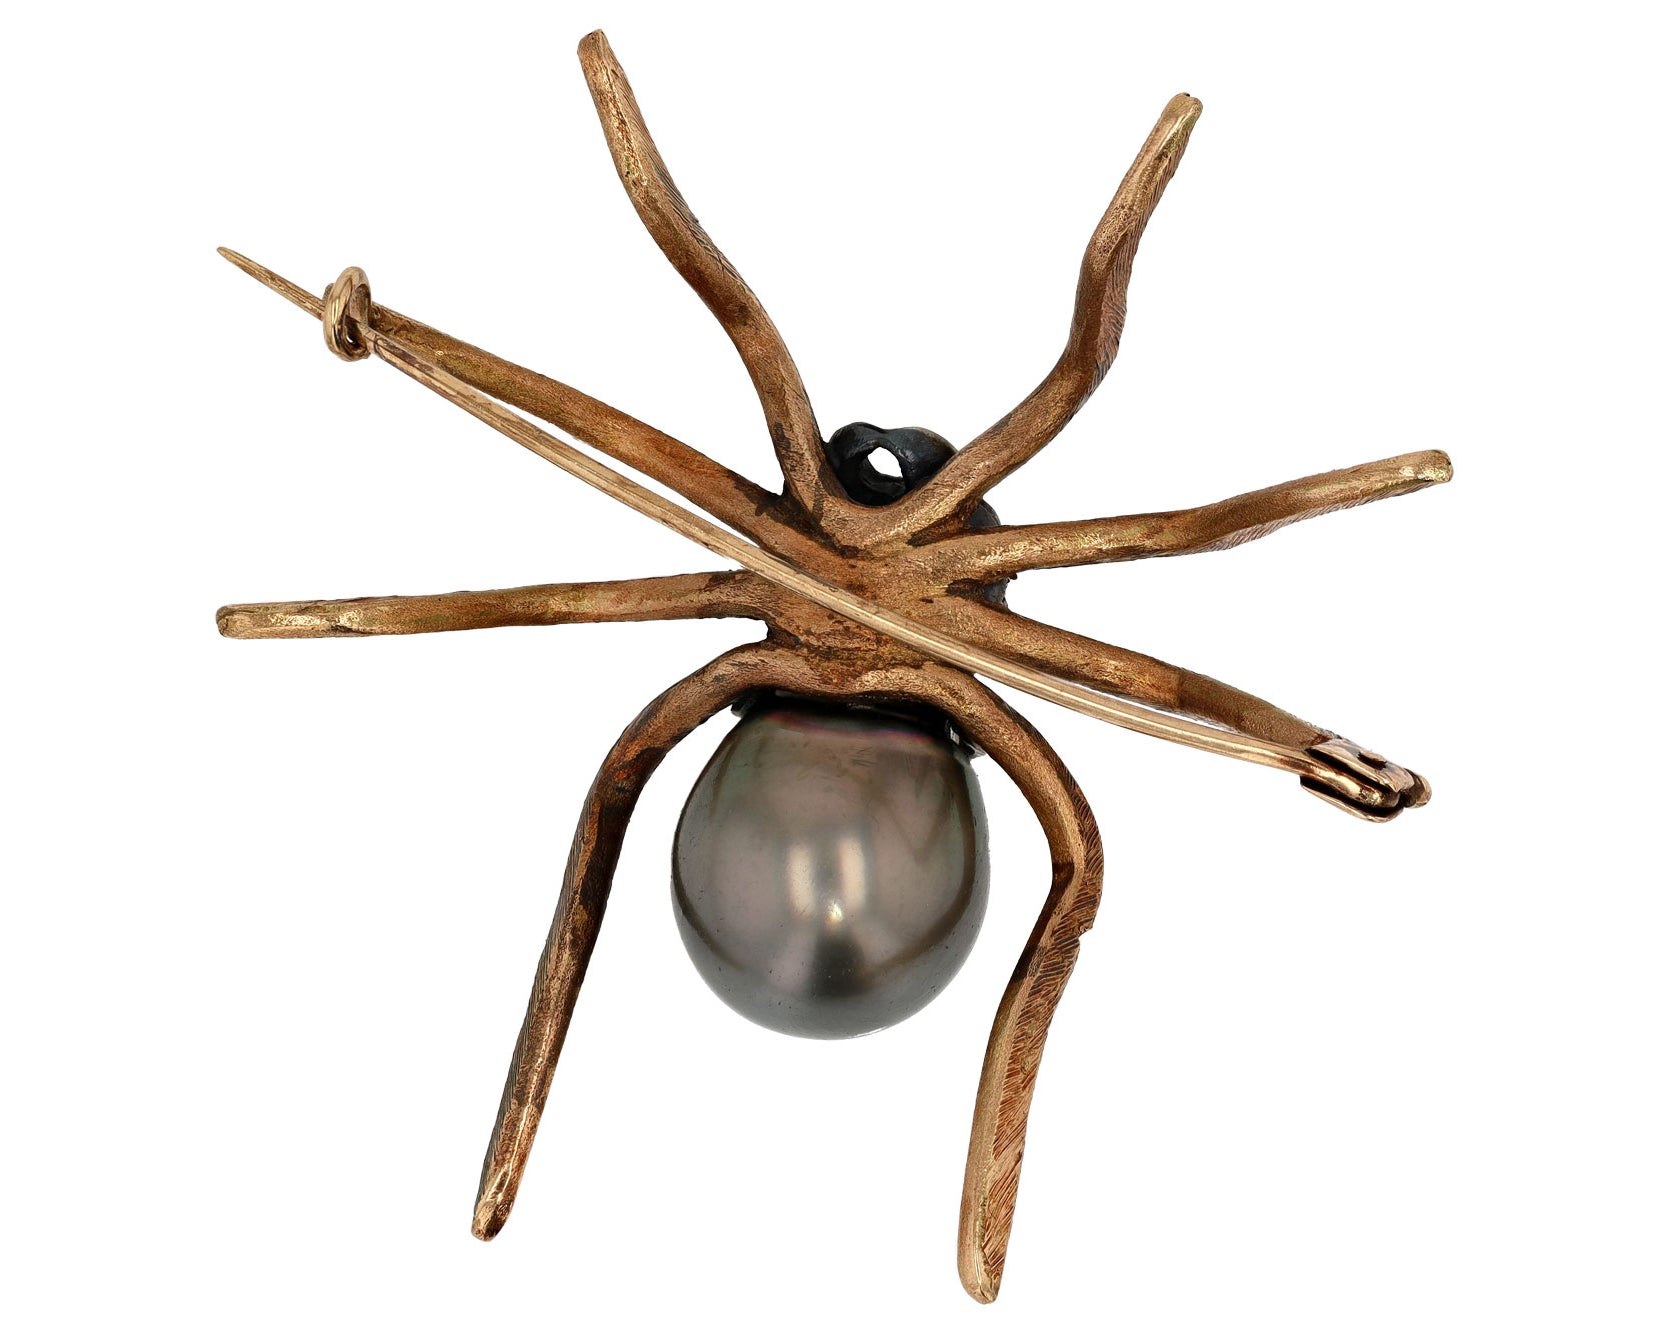 Black Tahitian Pearl Tarantula Spider Brooch Pin